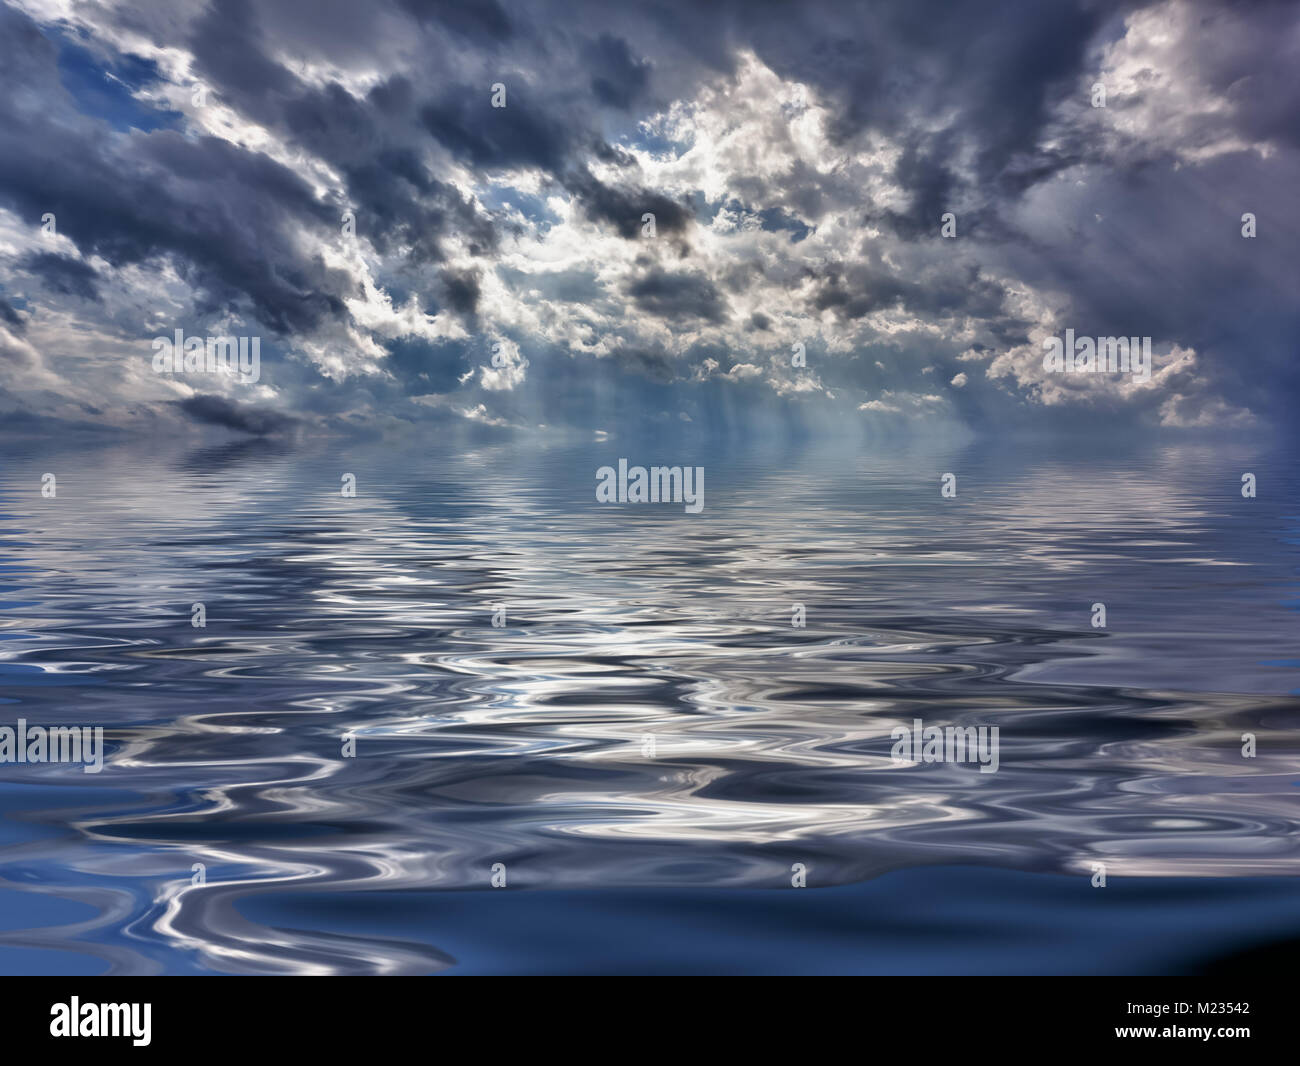 Backgrond immagine del cielo tempestoso su una calma e oceano riflettente Foto Stock